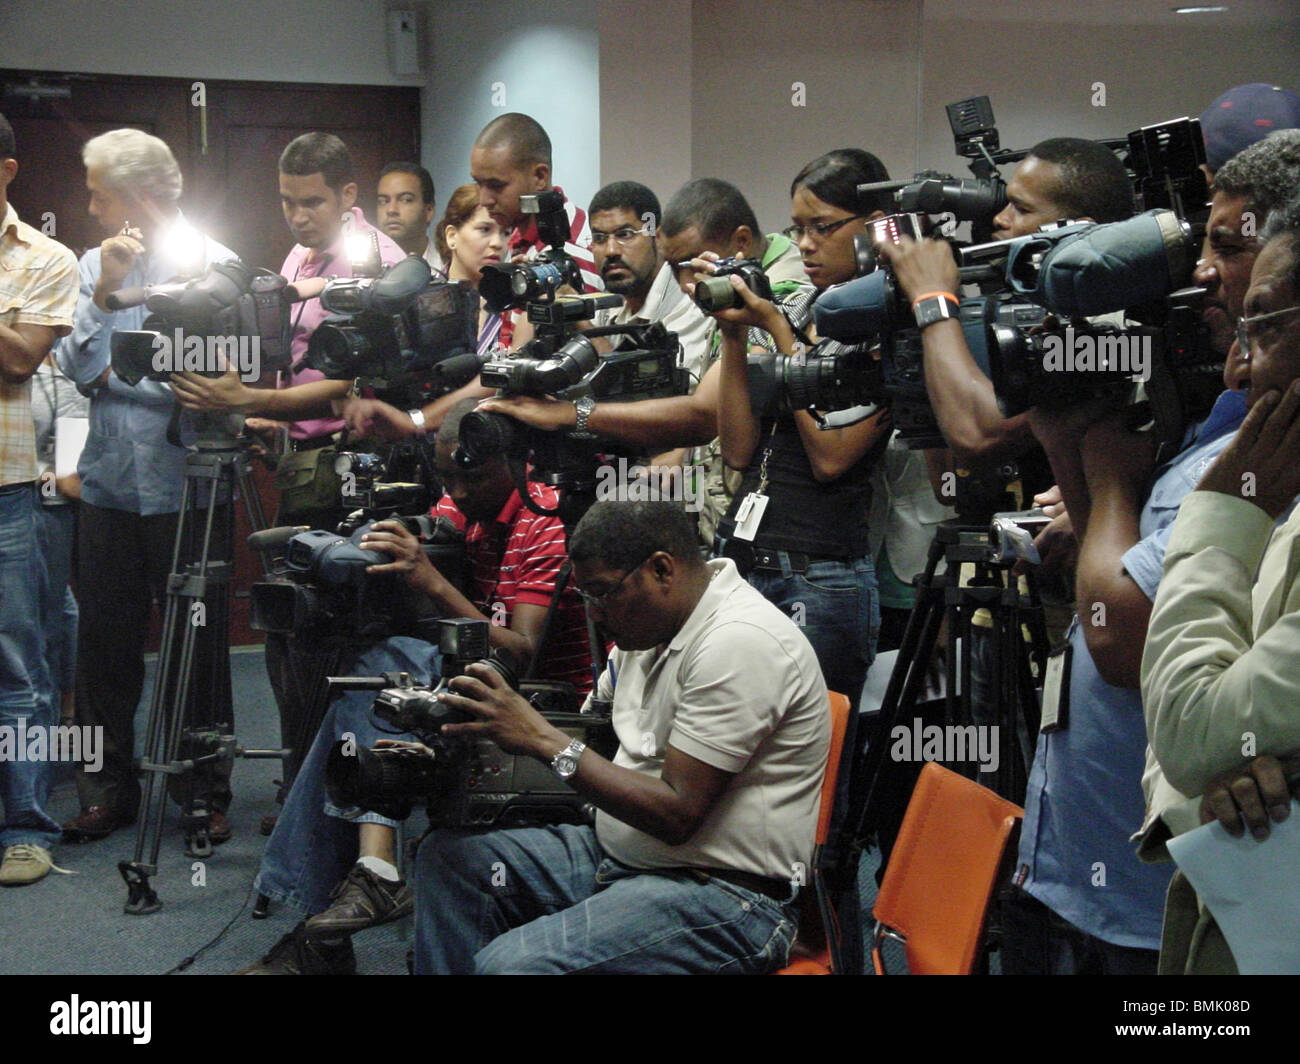 Repubblica Dominicana premere corps in occasione di una conferenza stampa a Santo Domingo, Repubblica Dominicana Foto Stock